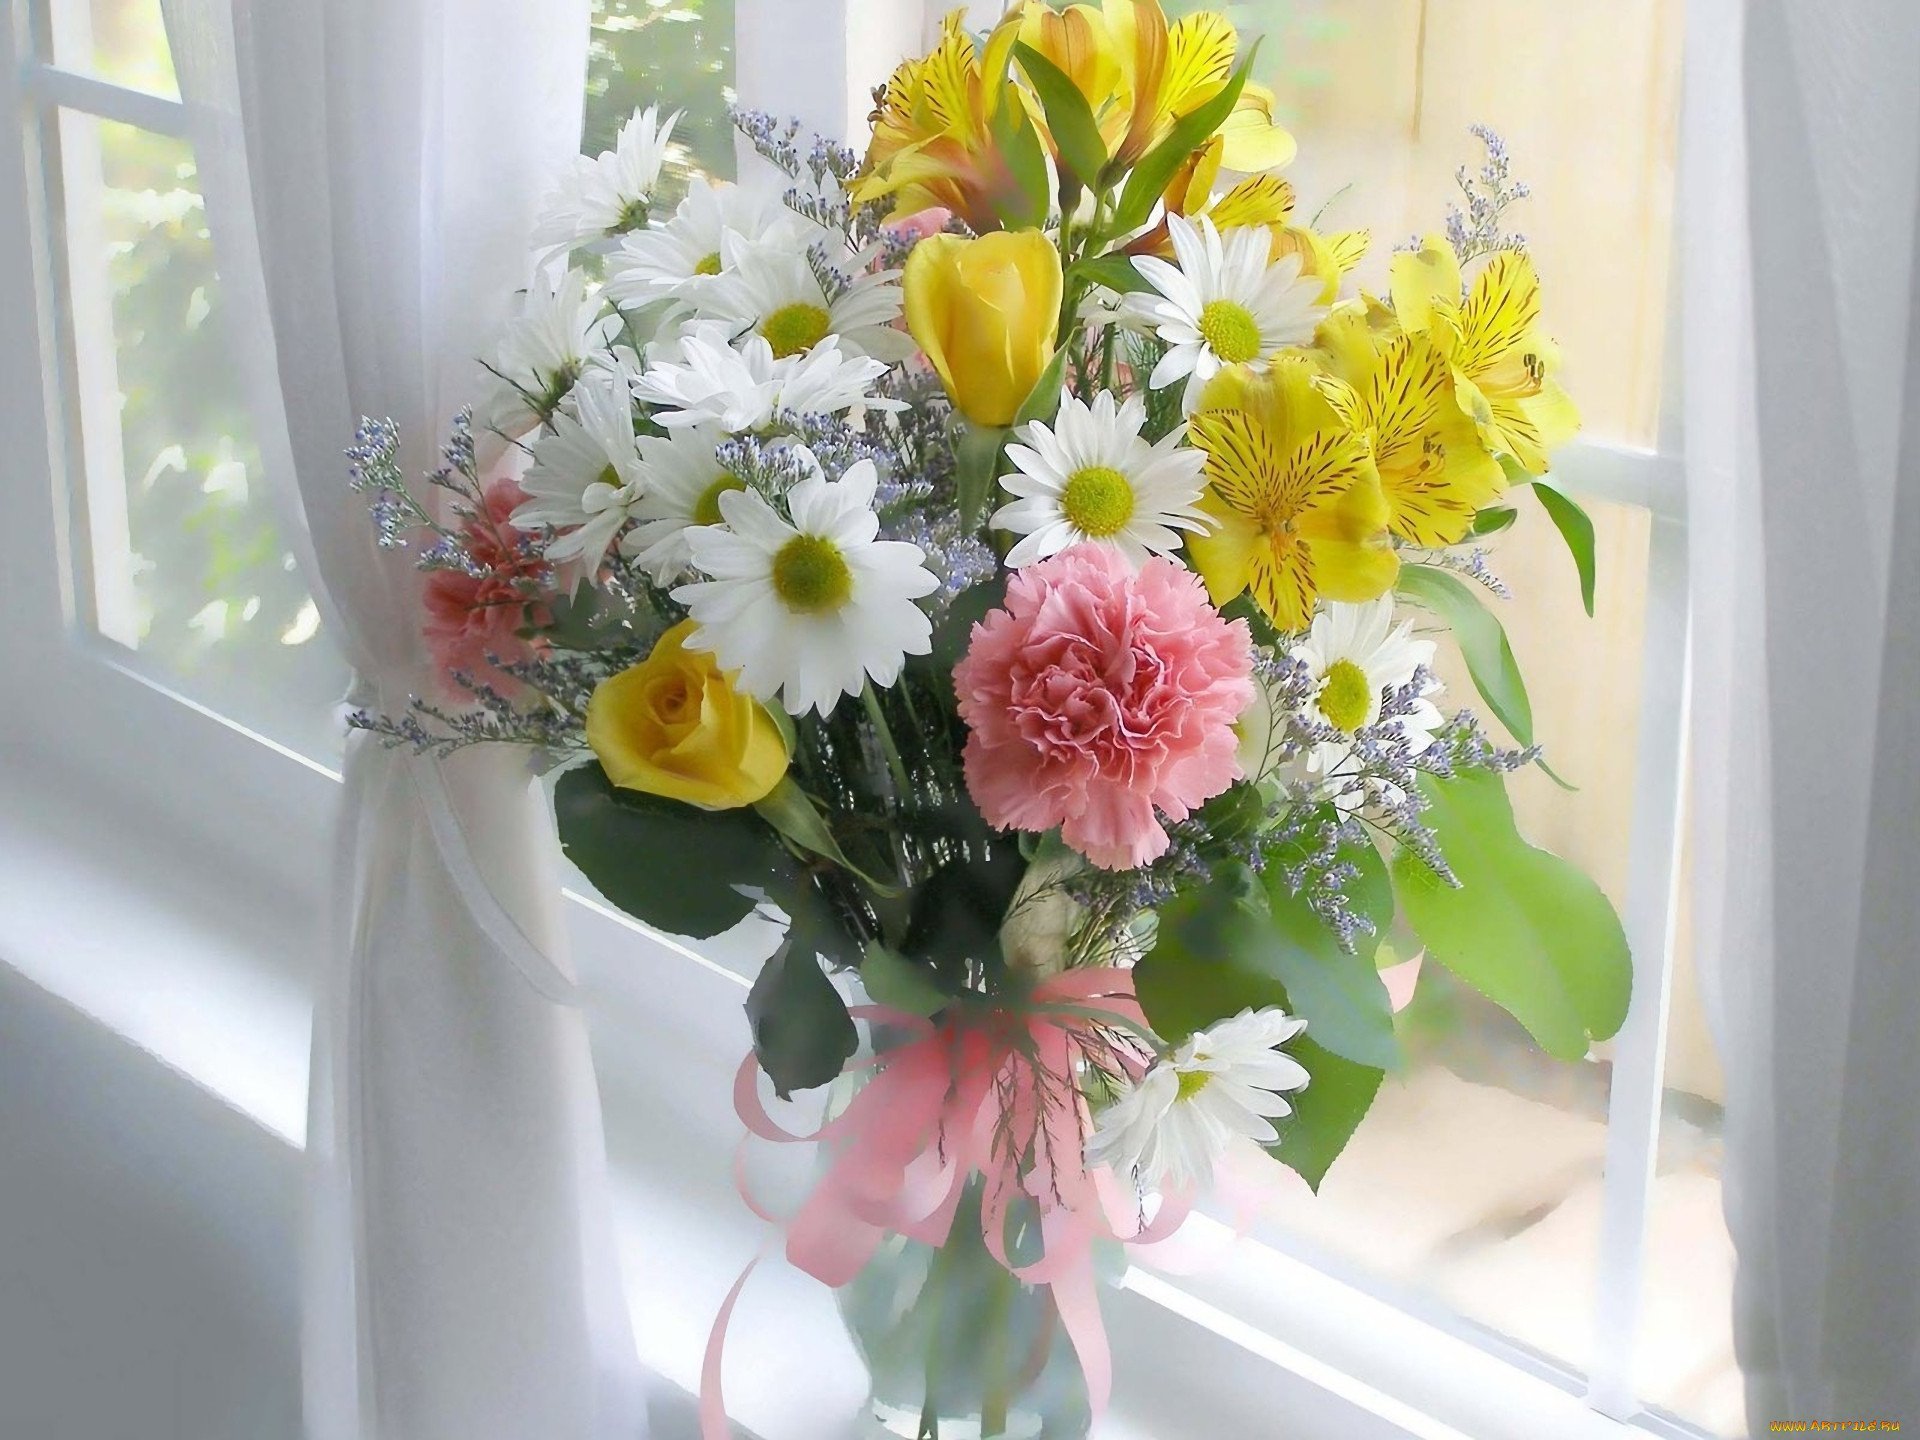 Картинка с цветами красивая хорошего дня. Летние цветы в вазе. Летний букет. Солнечный букет. Цветы на окне.